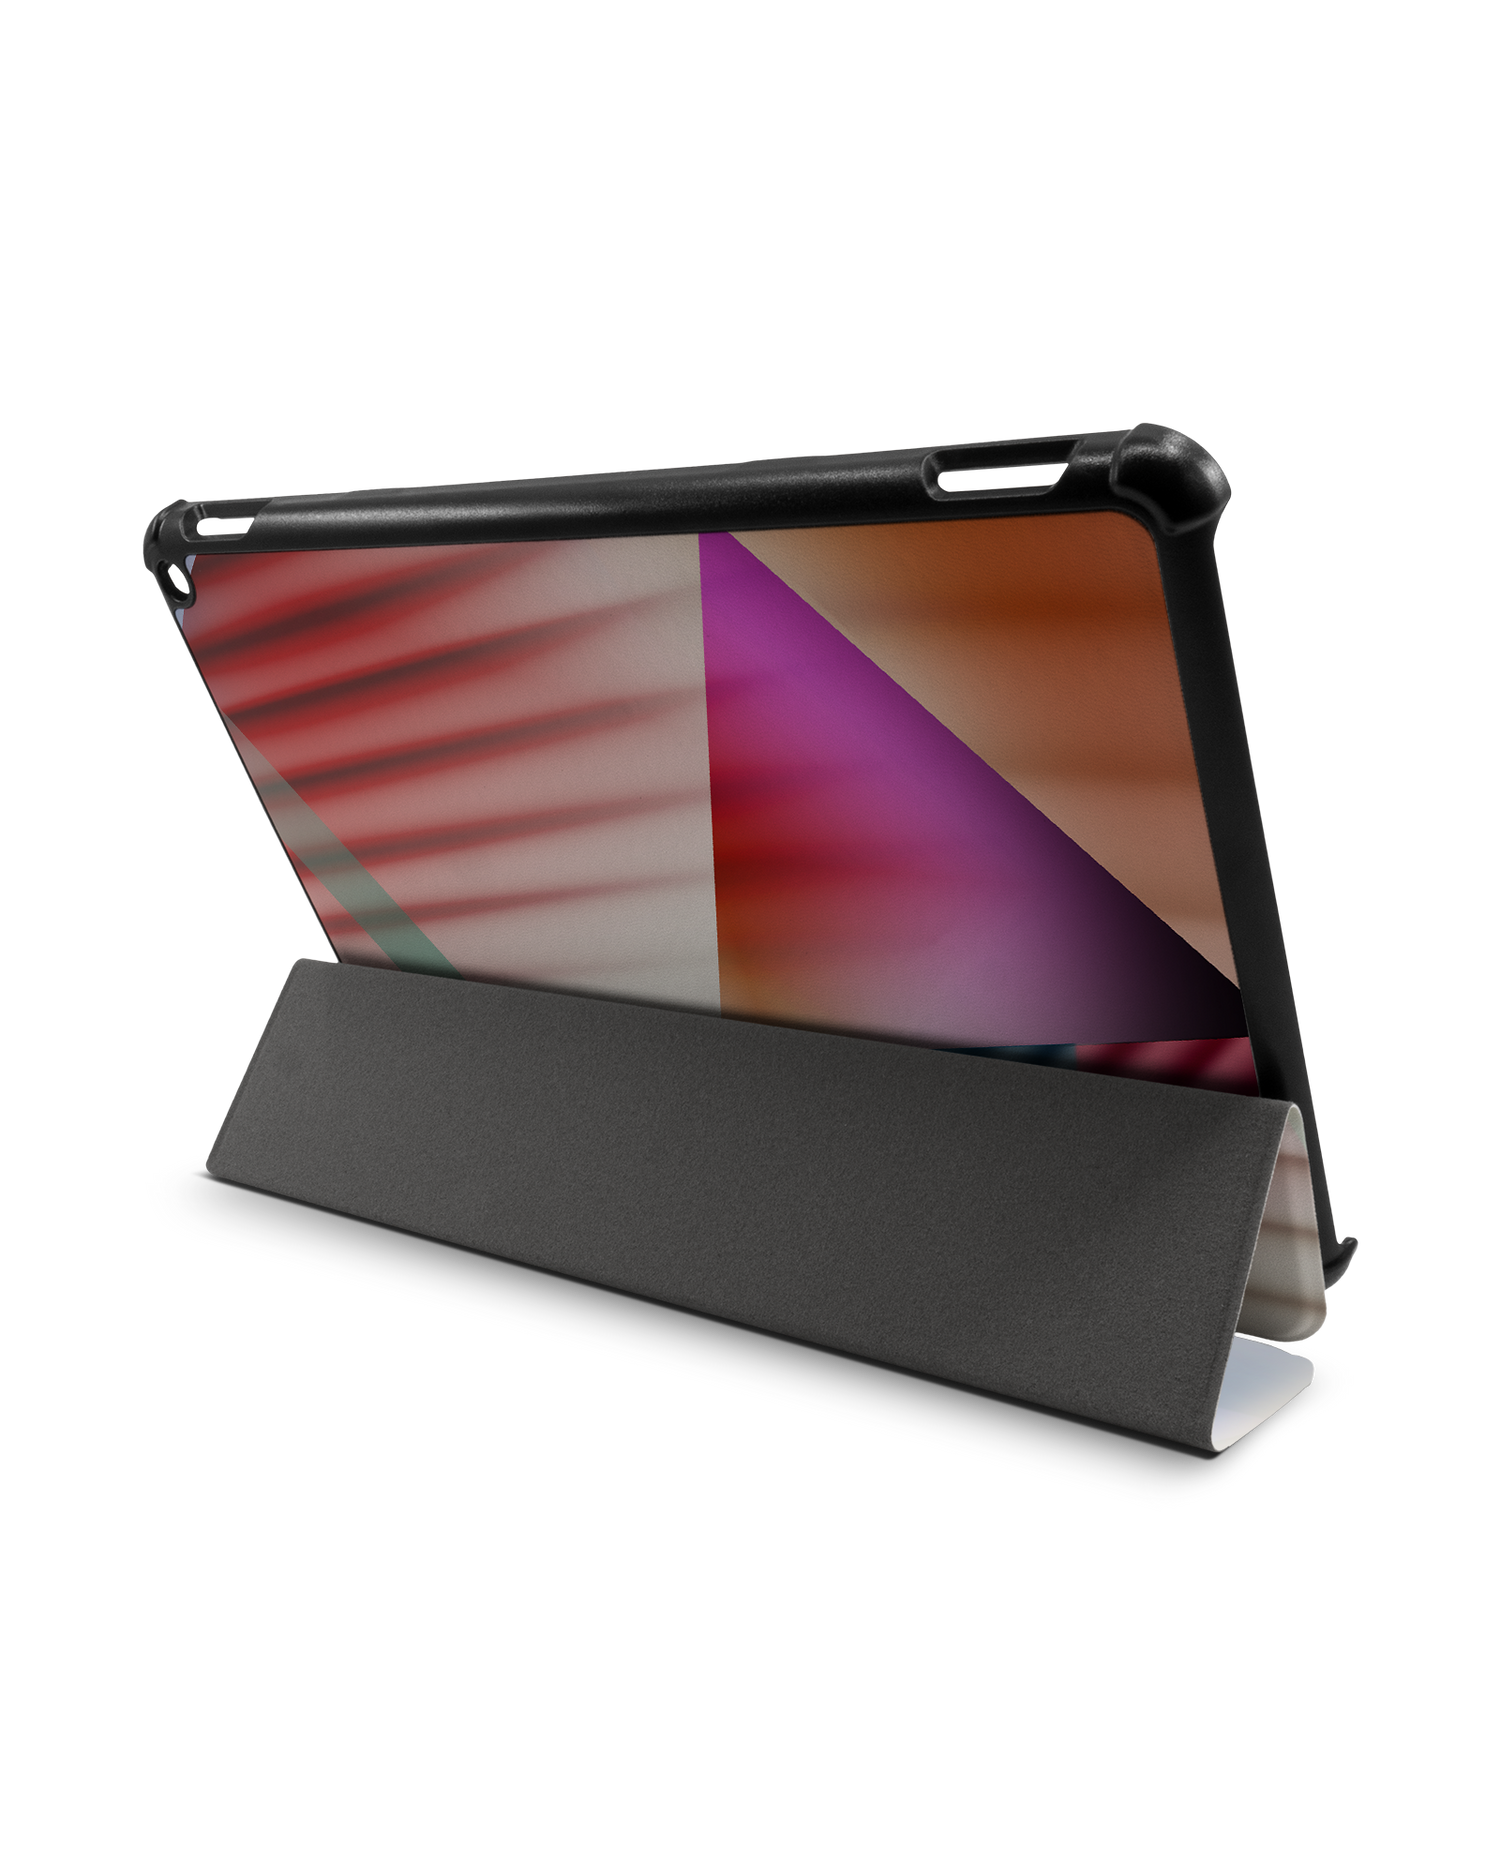 Later Eighties Tablet Smart Case für Amazon Fire HD 10 (2021): Aufgestellt im Querformat